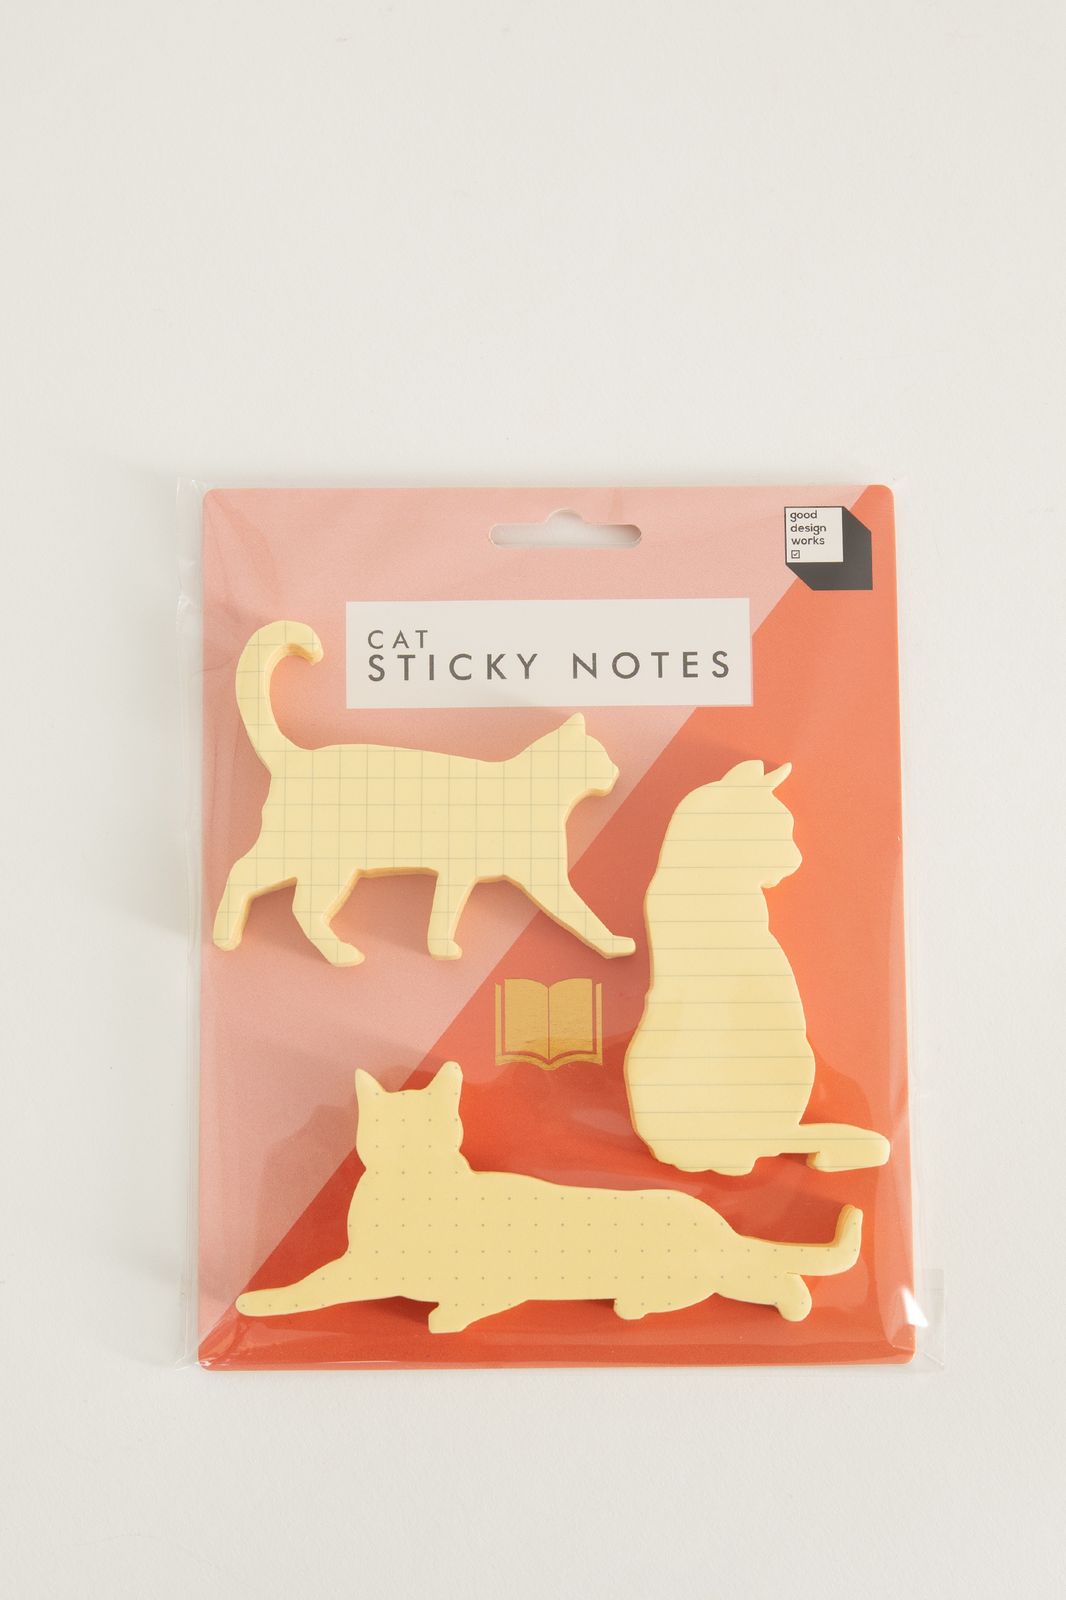 Cat sticky notes